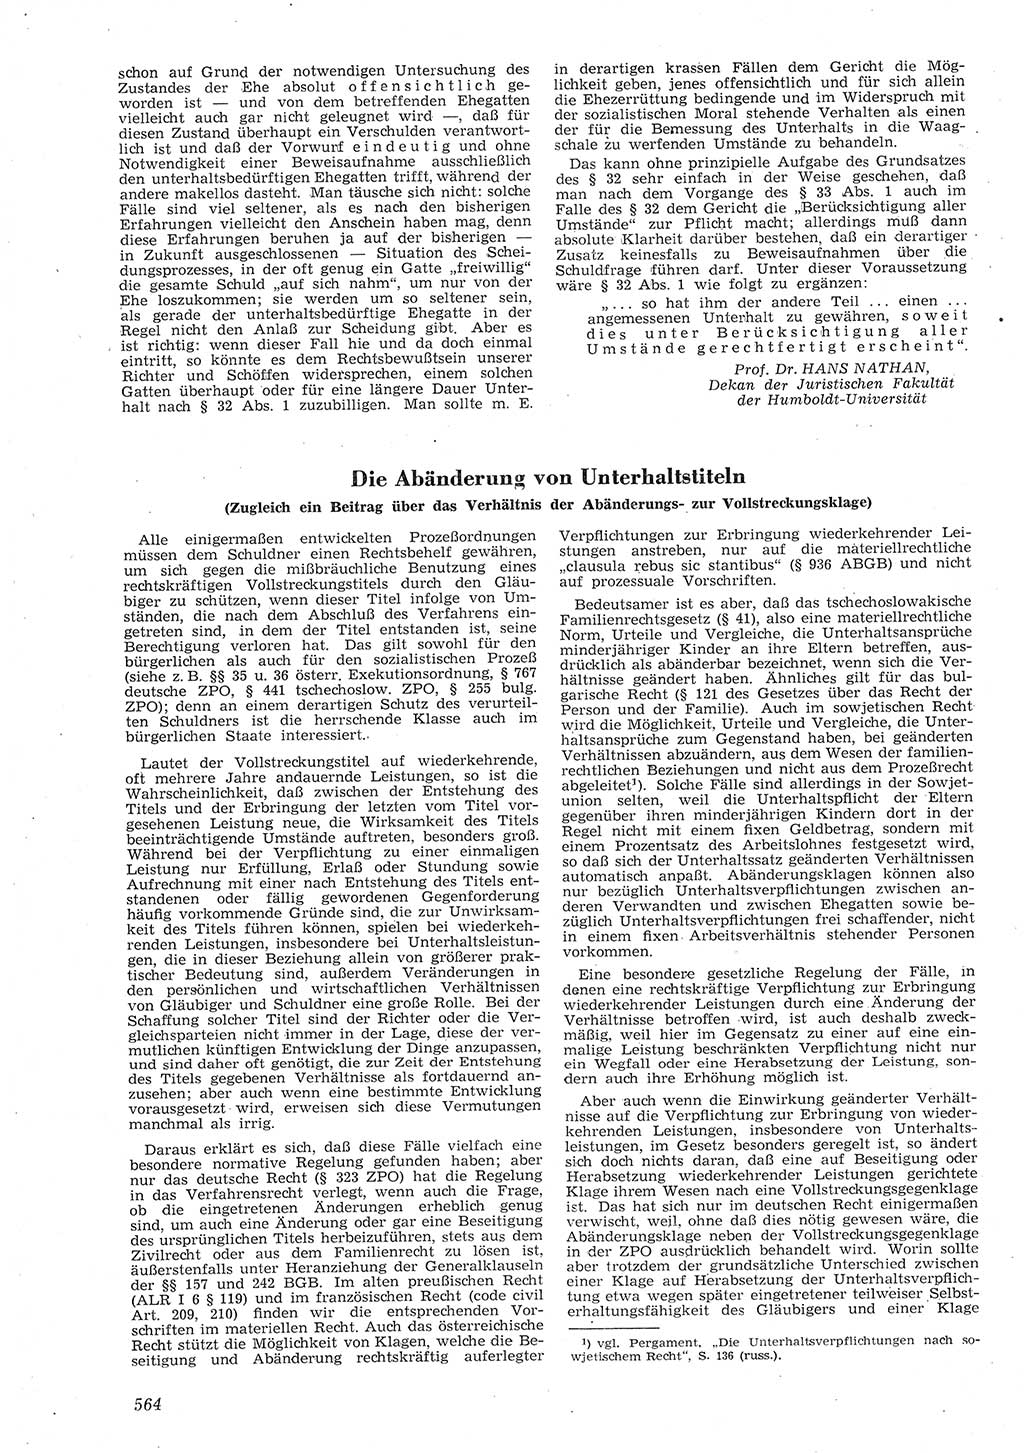 Neue Justiz (NJ), Zeitschrift für Recht und Rechtswissenschaft [Deutsche Demokratische Republik (DDR)], 8. Jahrgang 1954, Seite 564 (NJ DDR 1954, S. 564)